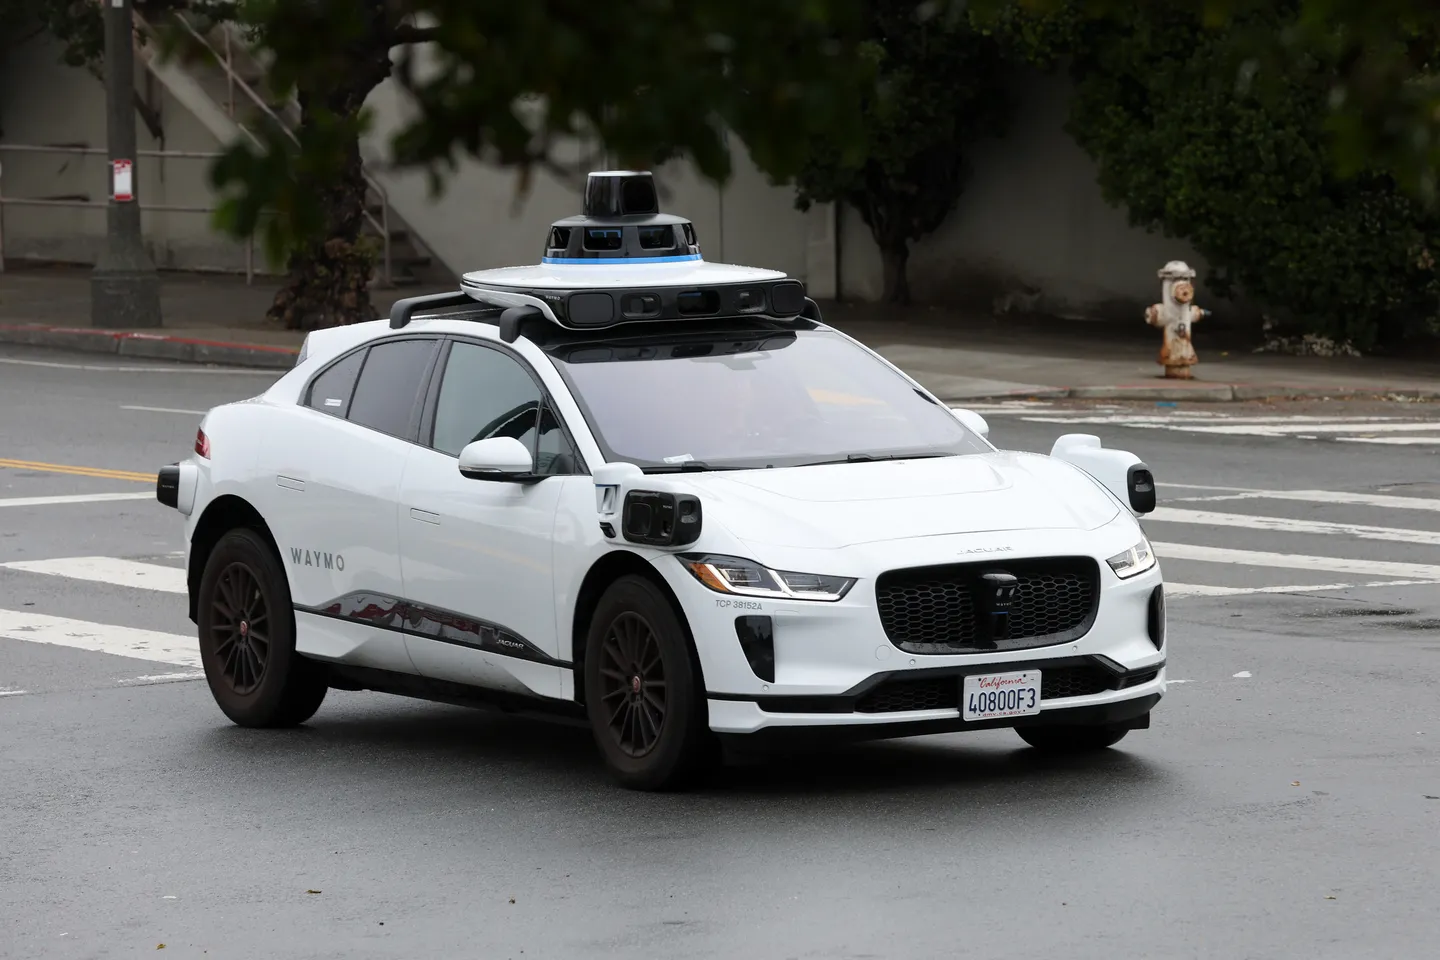 Waymo driverless